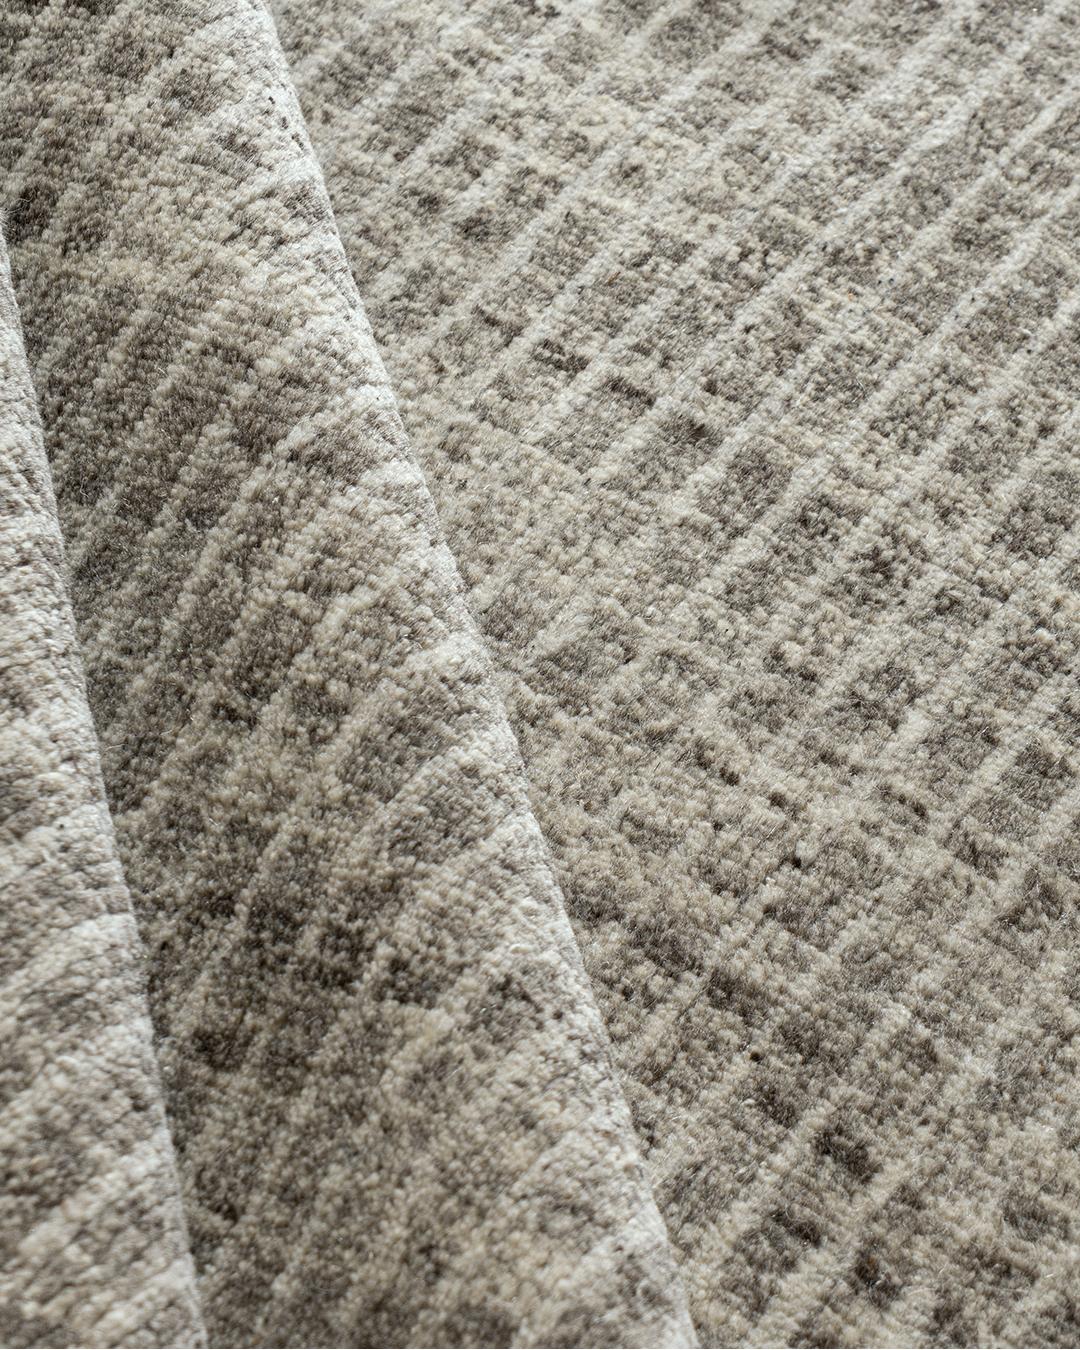 Nuit organique contemporaine Tapis de sol 9' x 12'. Les tapis marocains et de style marocain ont le vent en poupe. Leur caractère direct, leur absence de chichis et leurs palettes dépouillées s'intègrent parfaitement aux décors modernes. Cette pièce